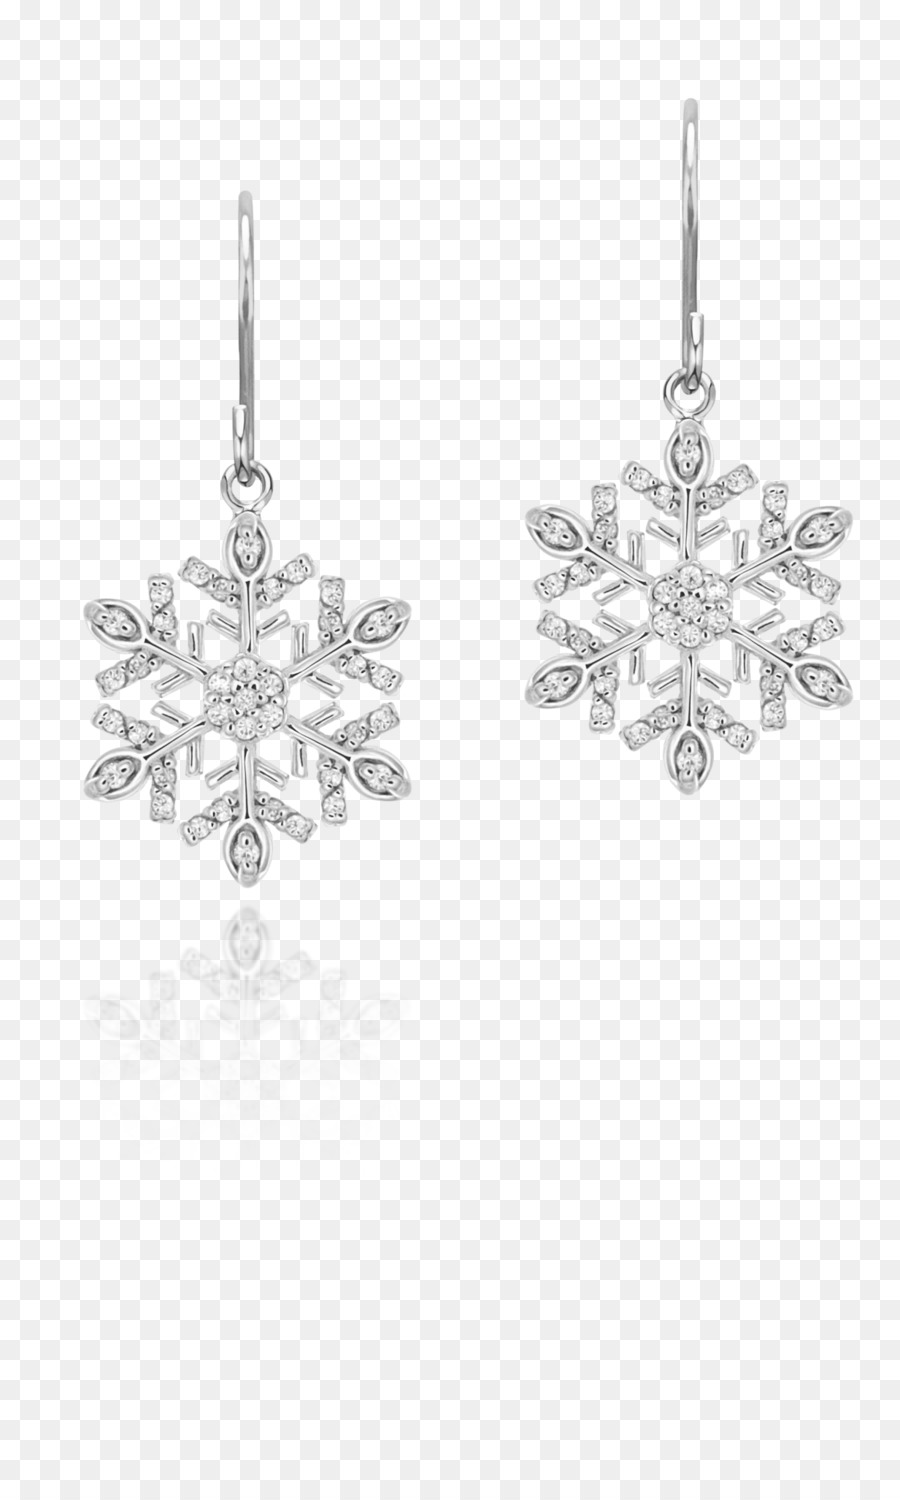 Ohrring-Schmuck-Bekleidung-Accessoires Weihnachten Jeoel - Schneeflocke